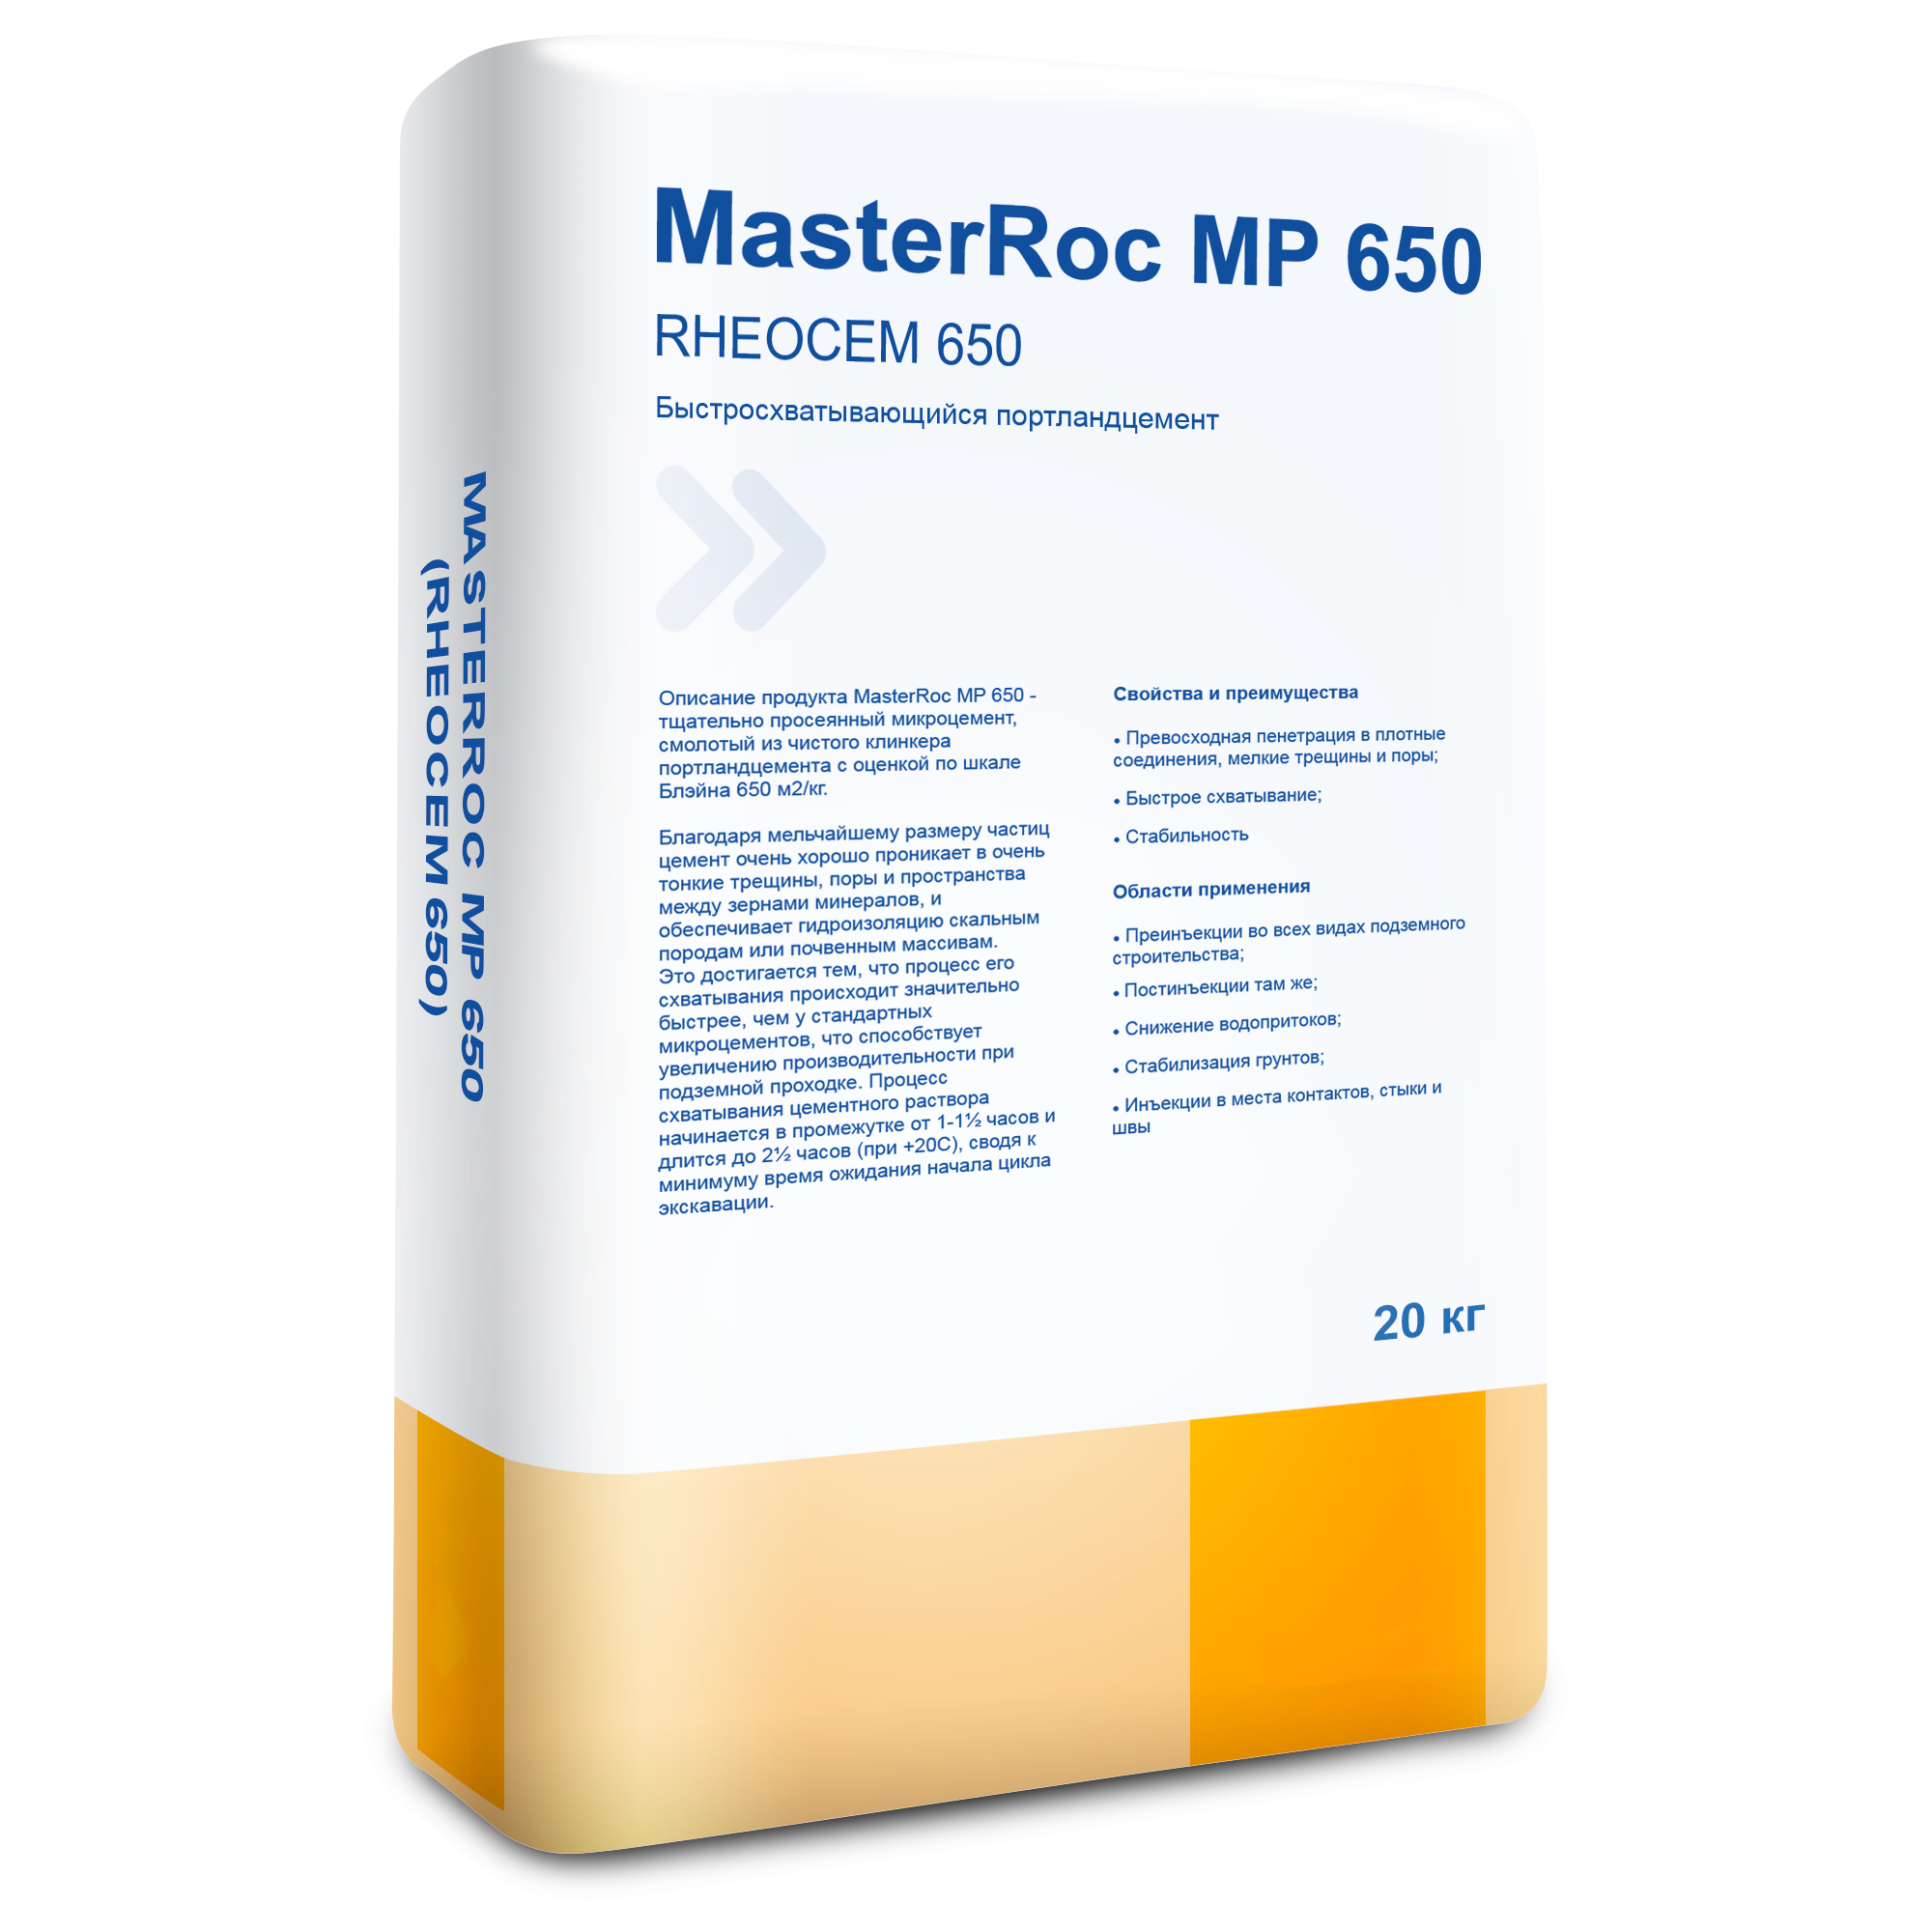 MasterRoc MP 650